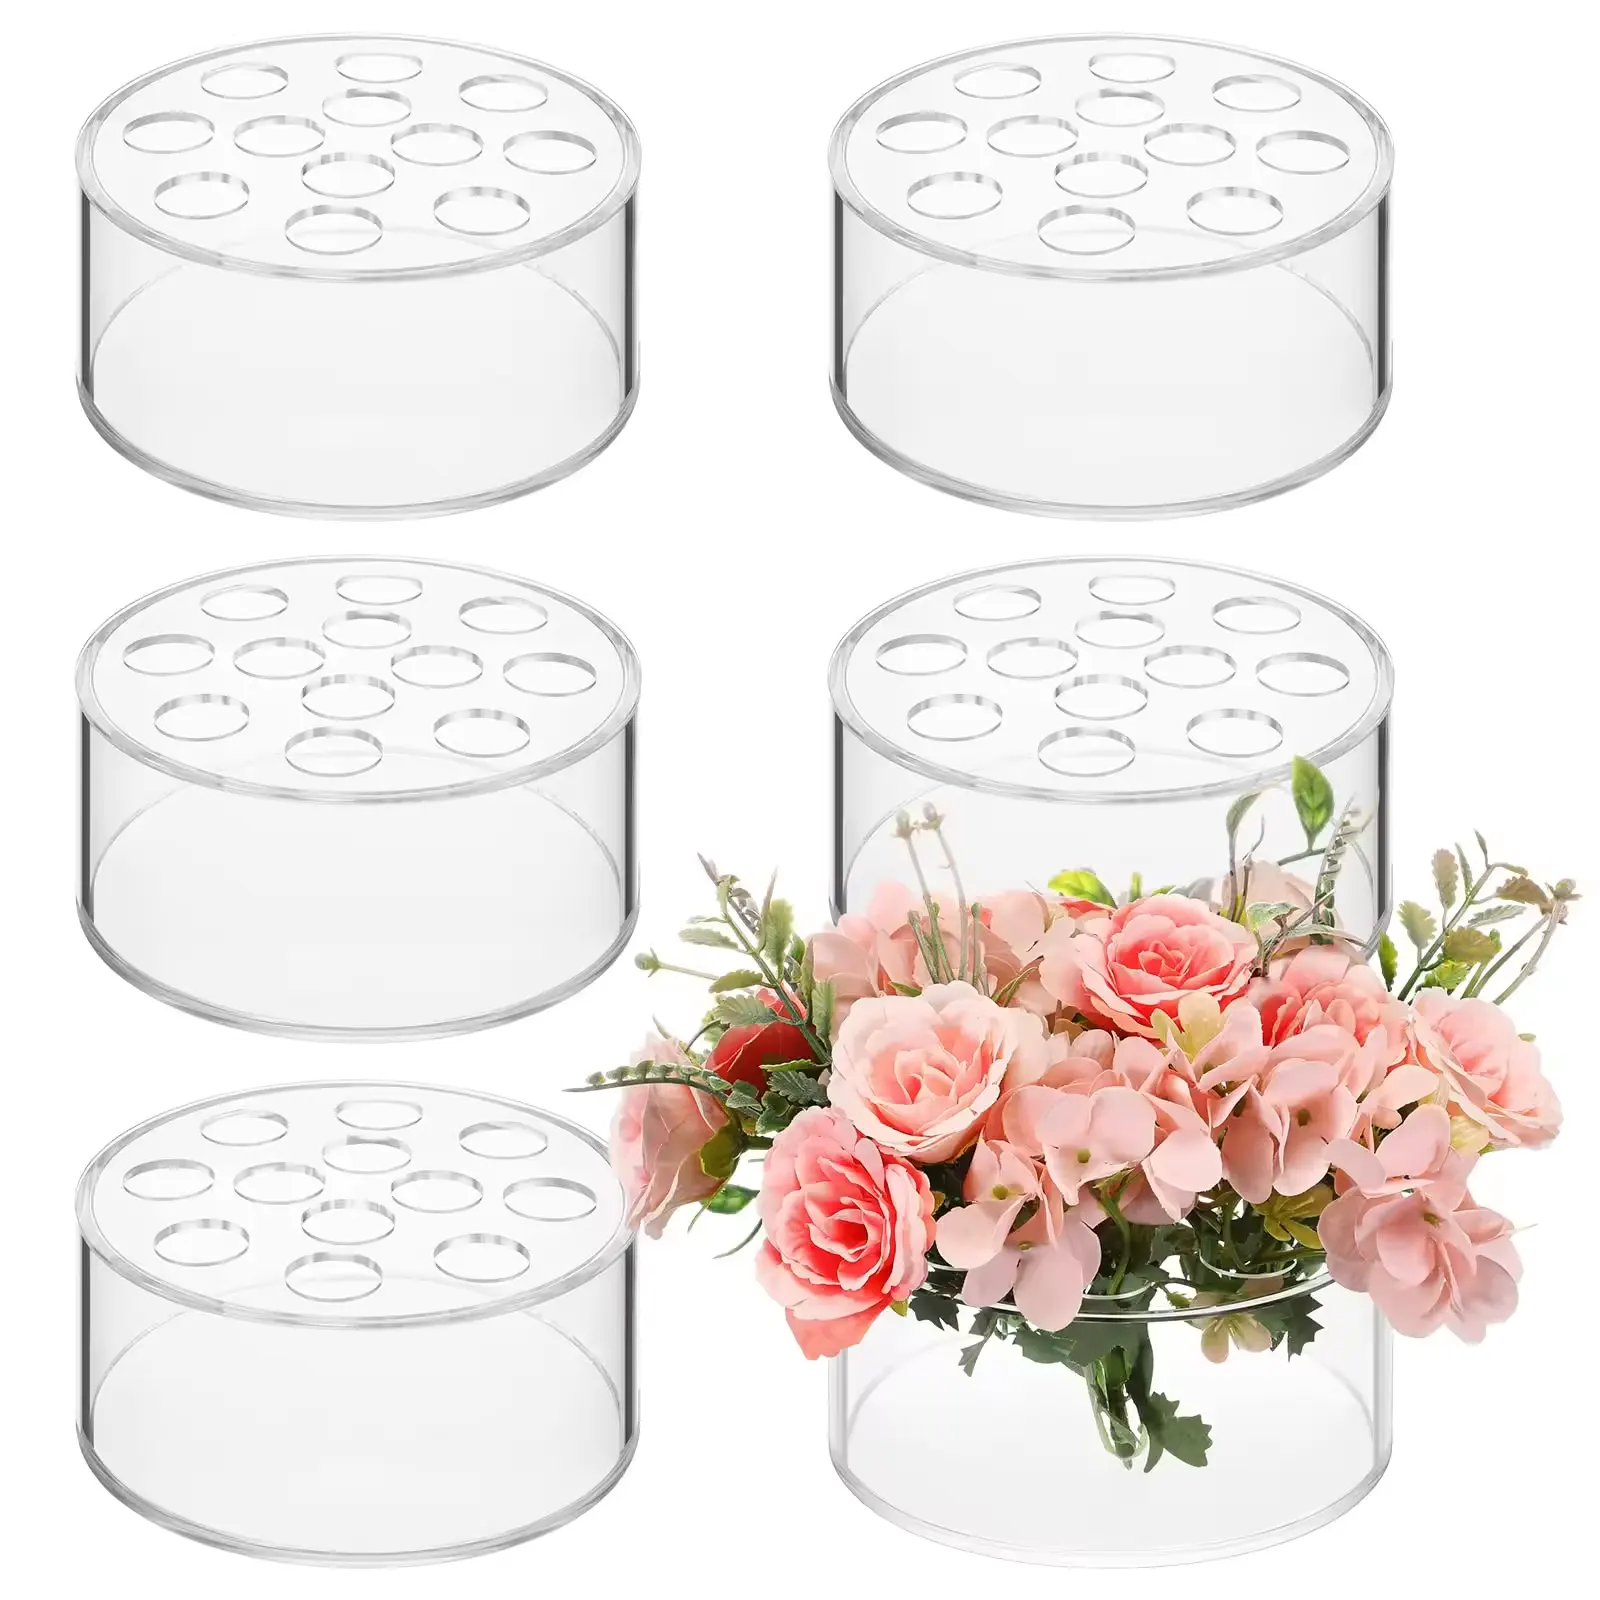 Niedriges Profil durchsichtiges acryl-Blumentisch mit 12 Löchern Esstisch Hochzeit und Geburtstag Party Schauregal Vase